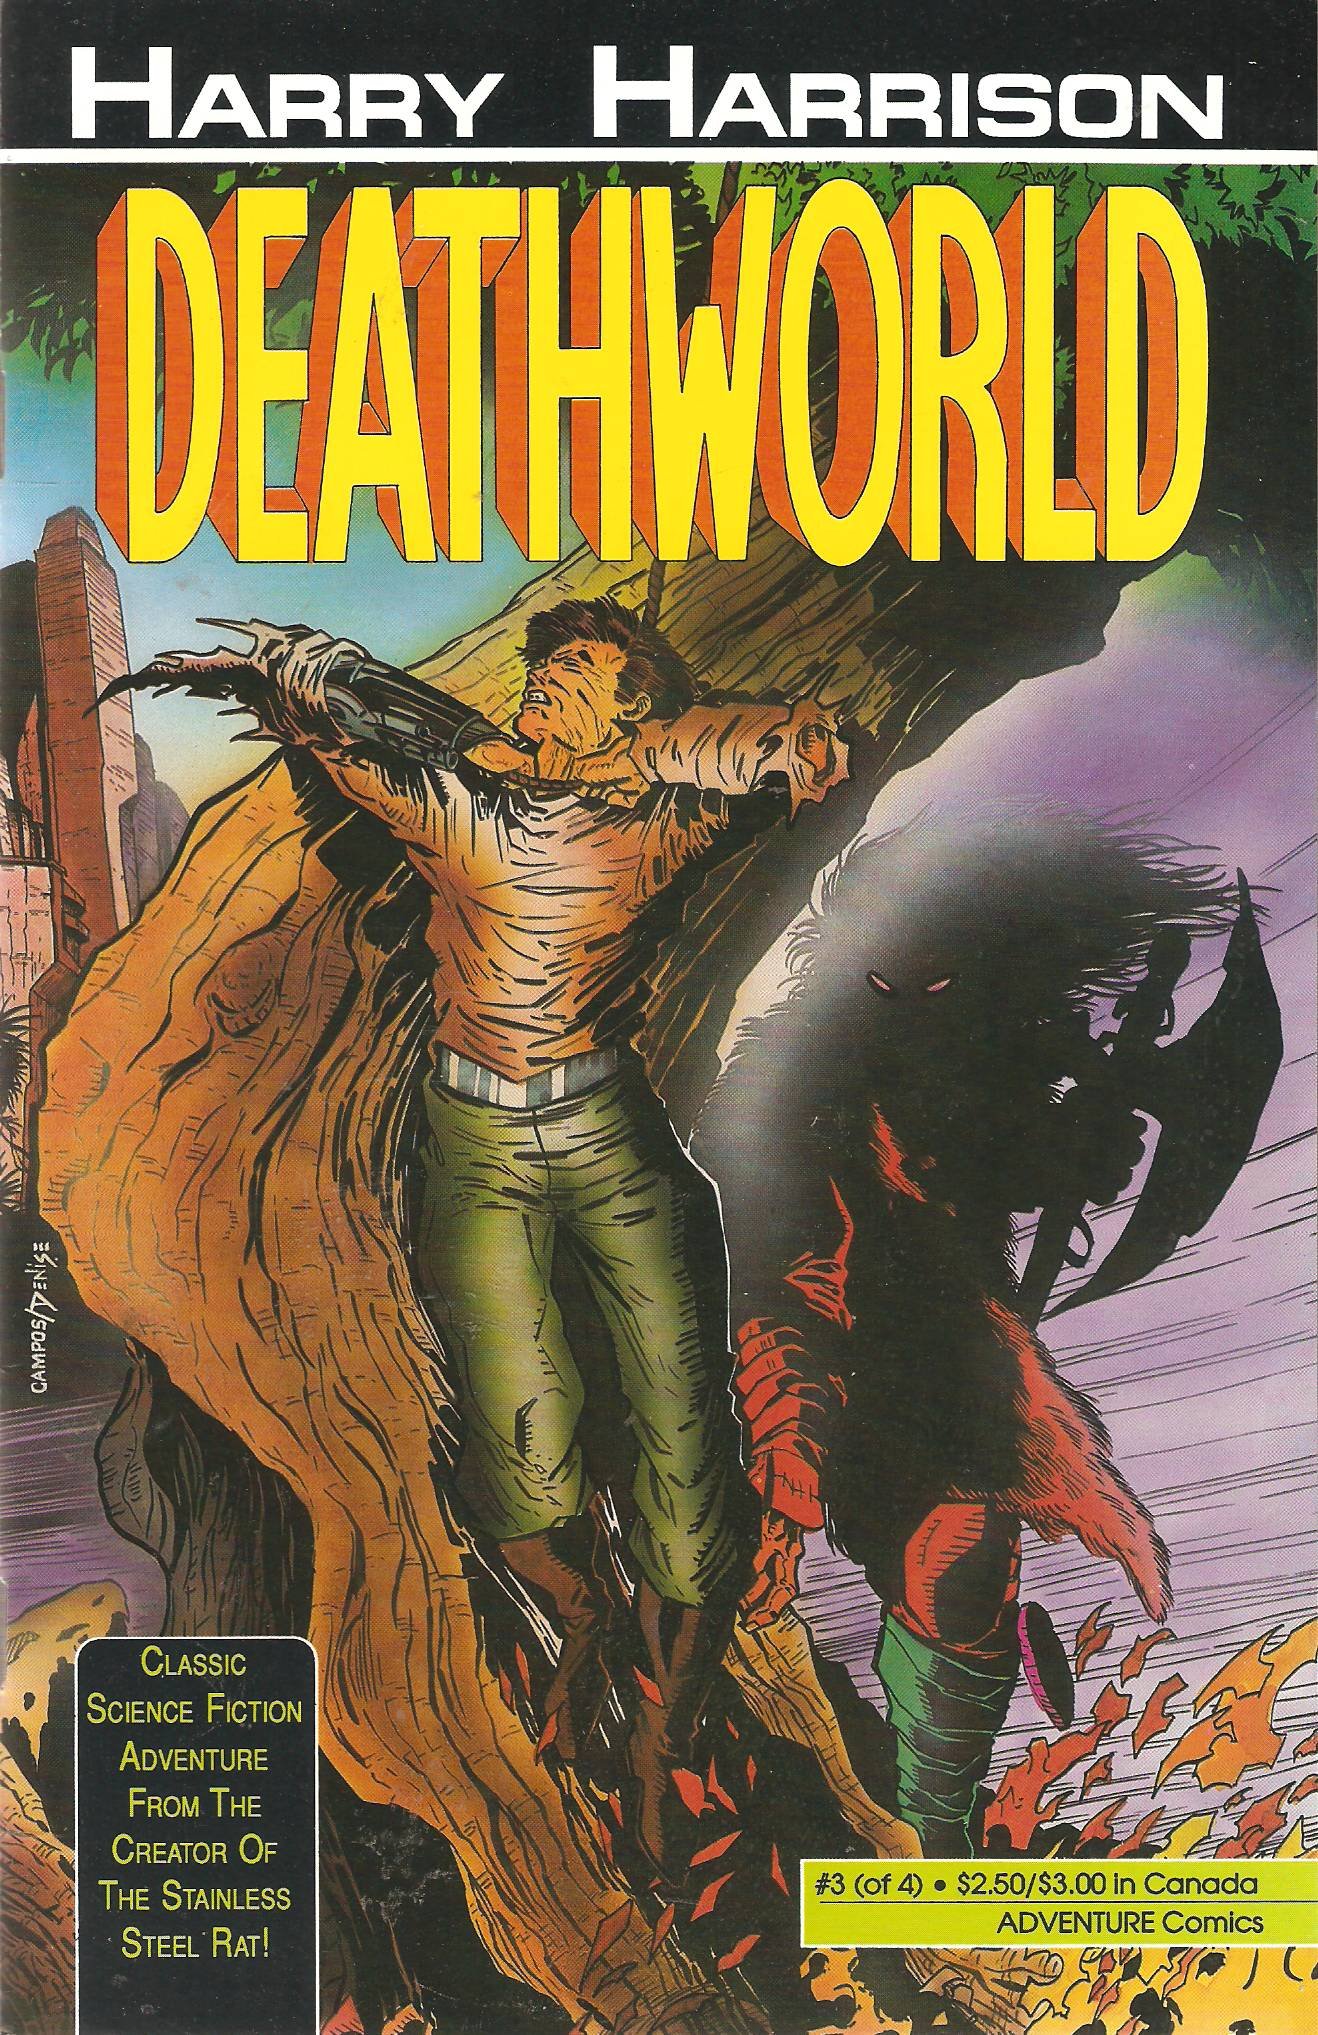 «Мир смерти» (Deathworld)